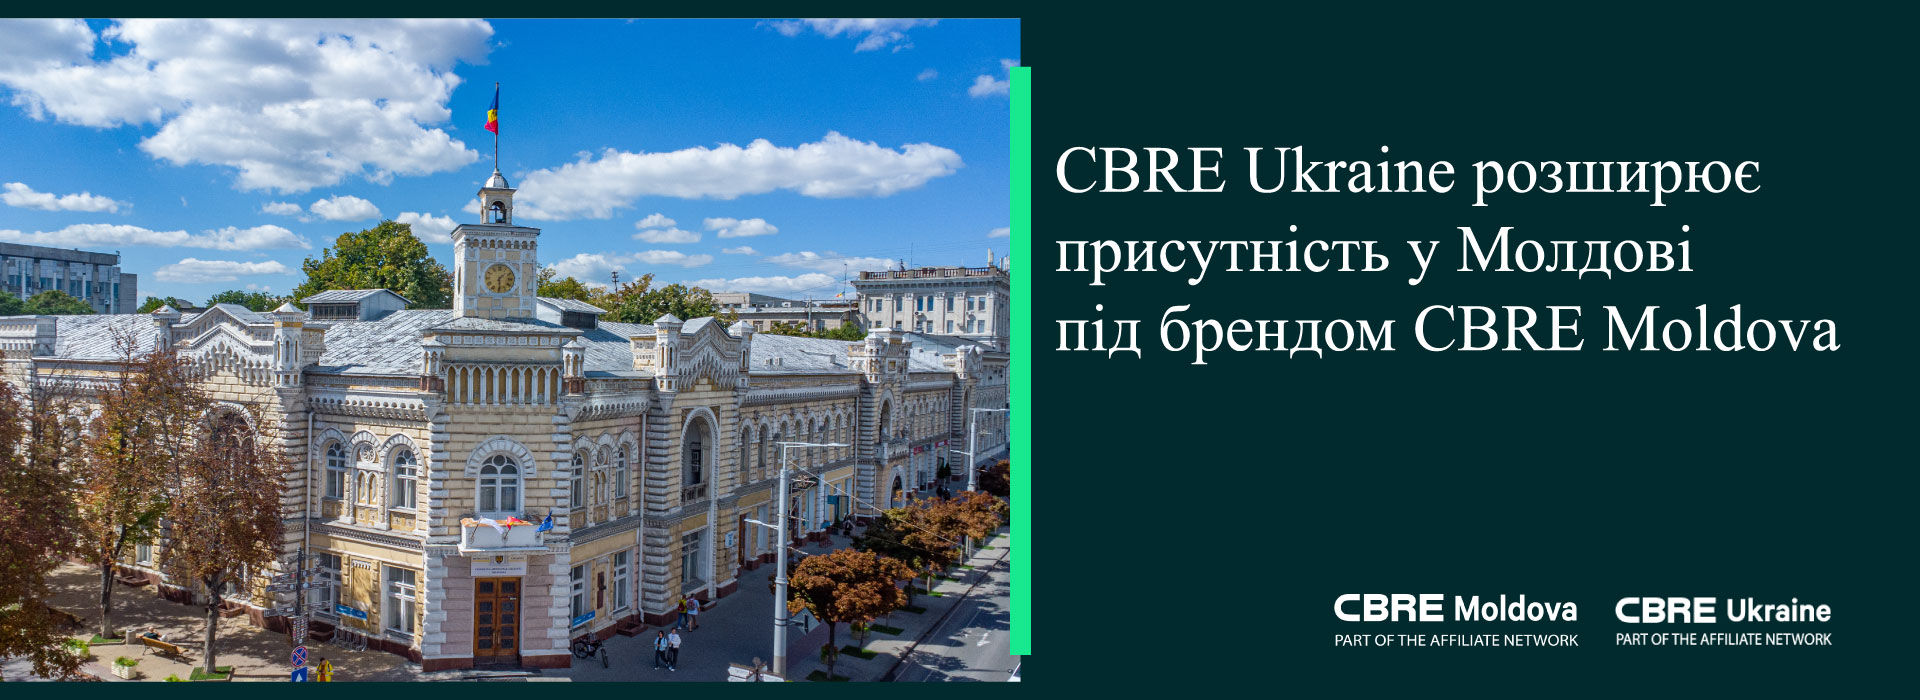 CBRE Ukraine розширює присутність у Молдові під брендом CBRE Moldova